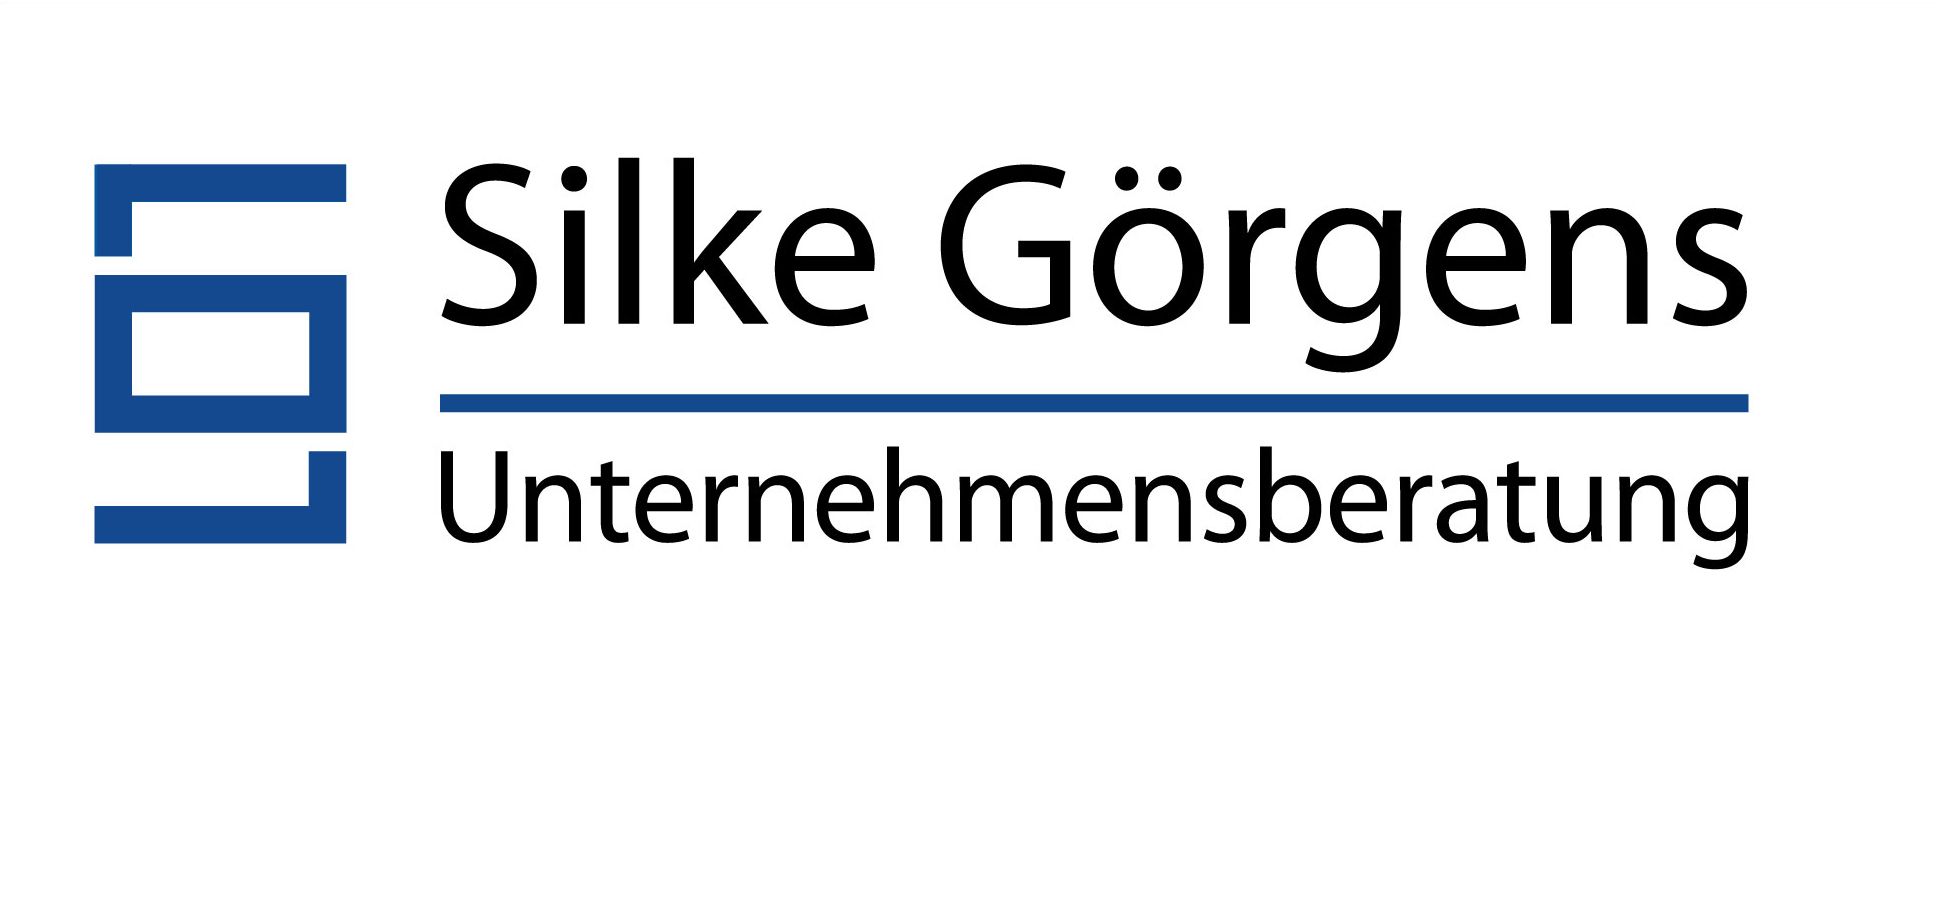 sg logo 2014